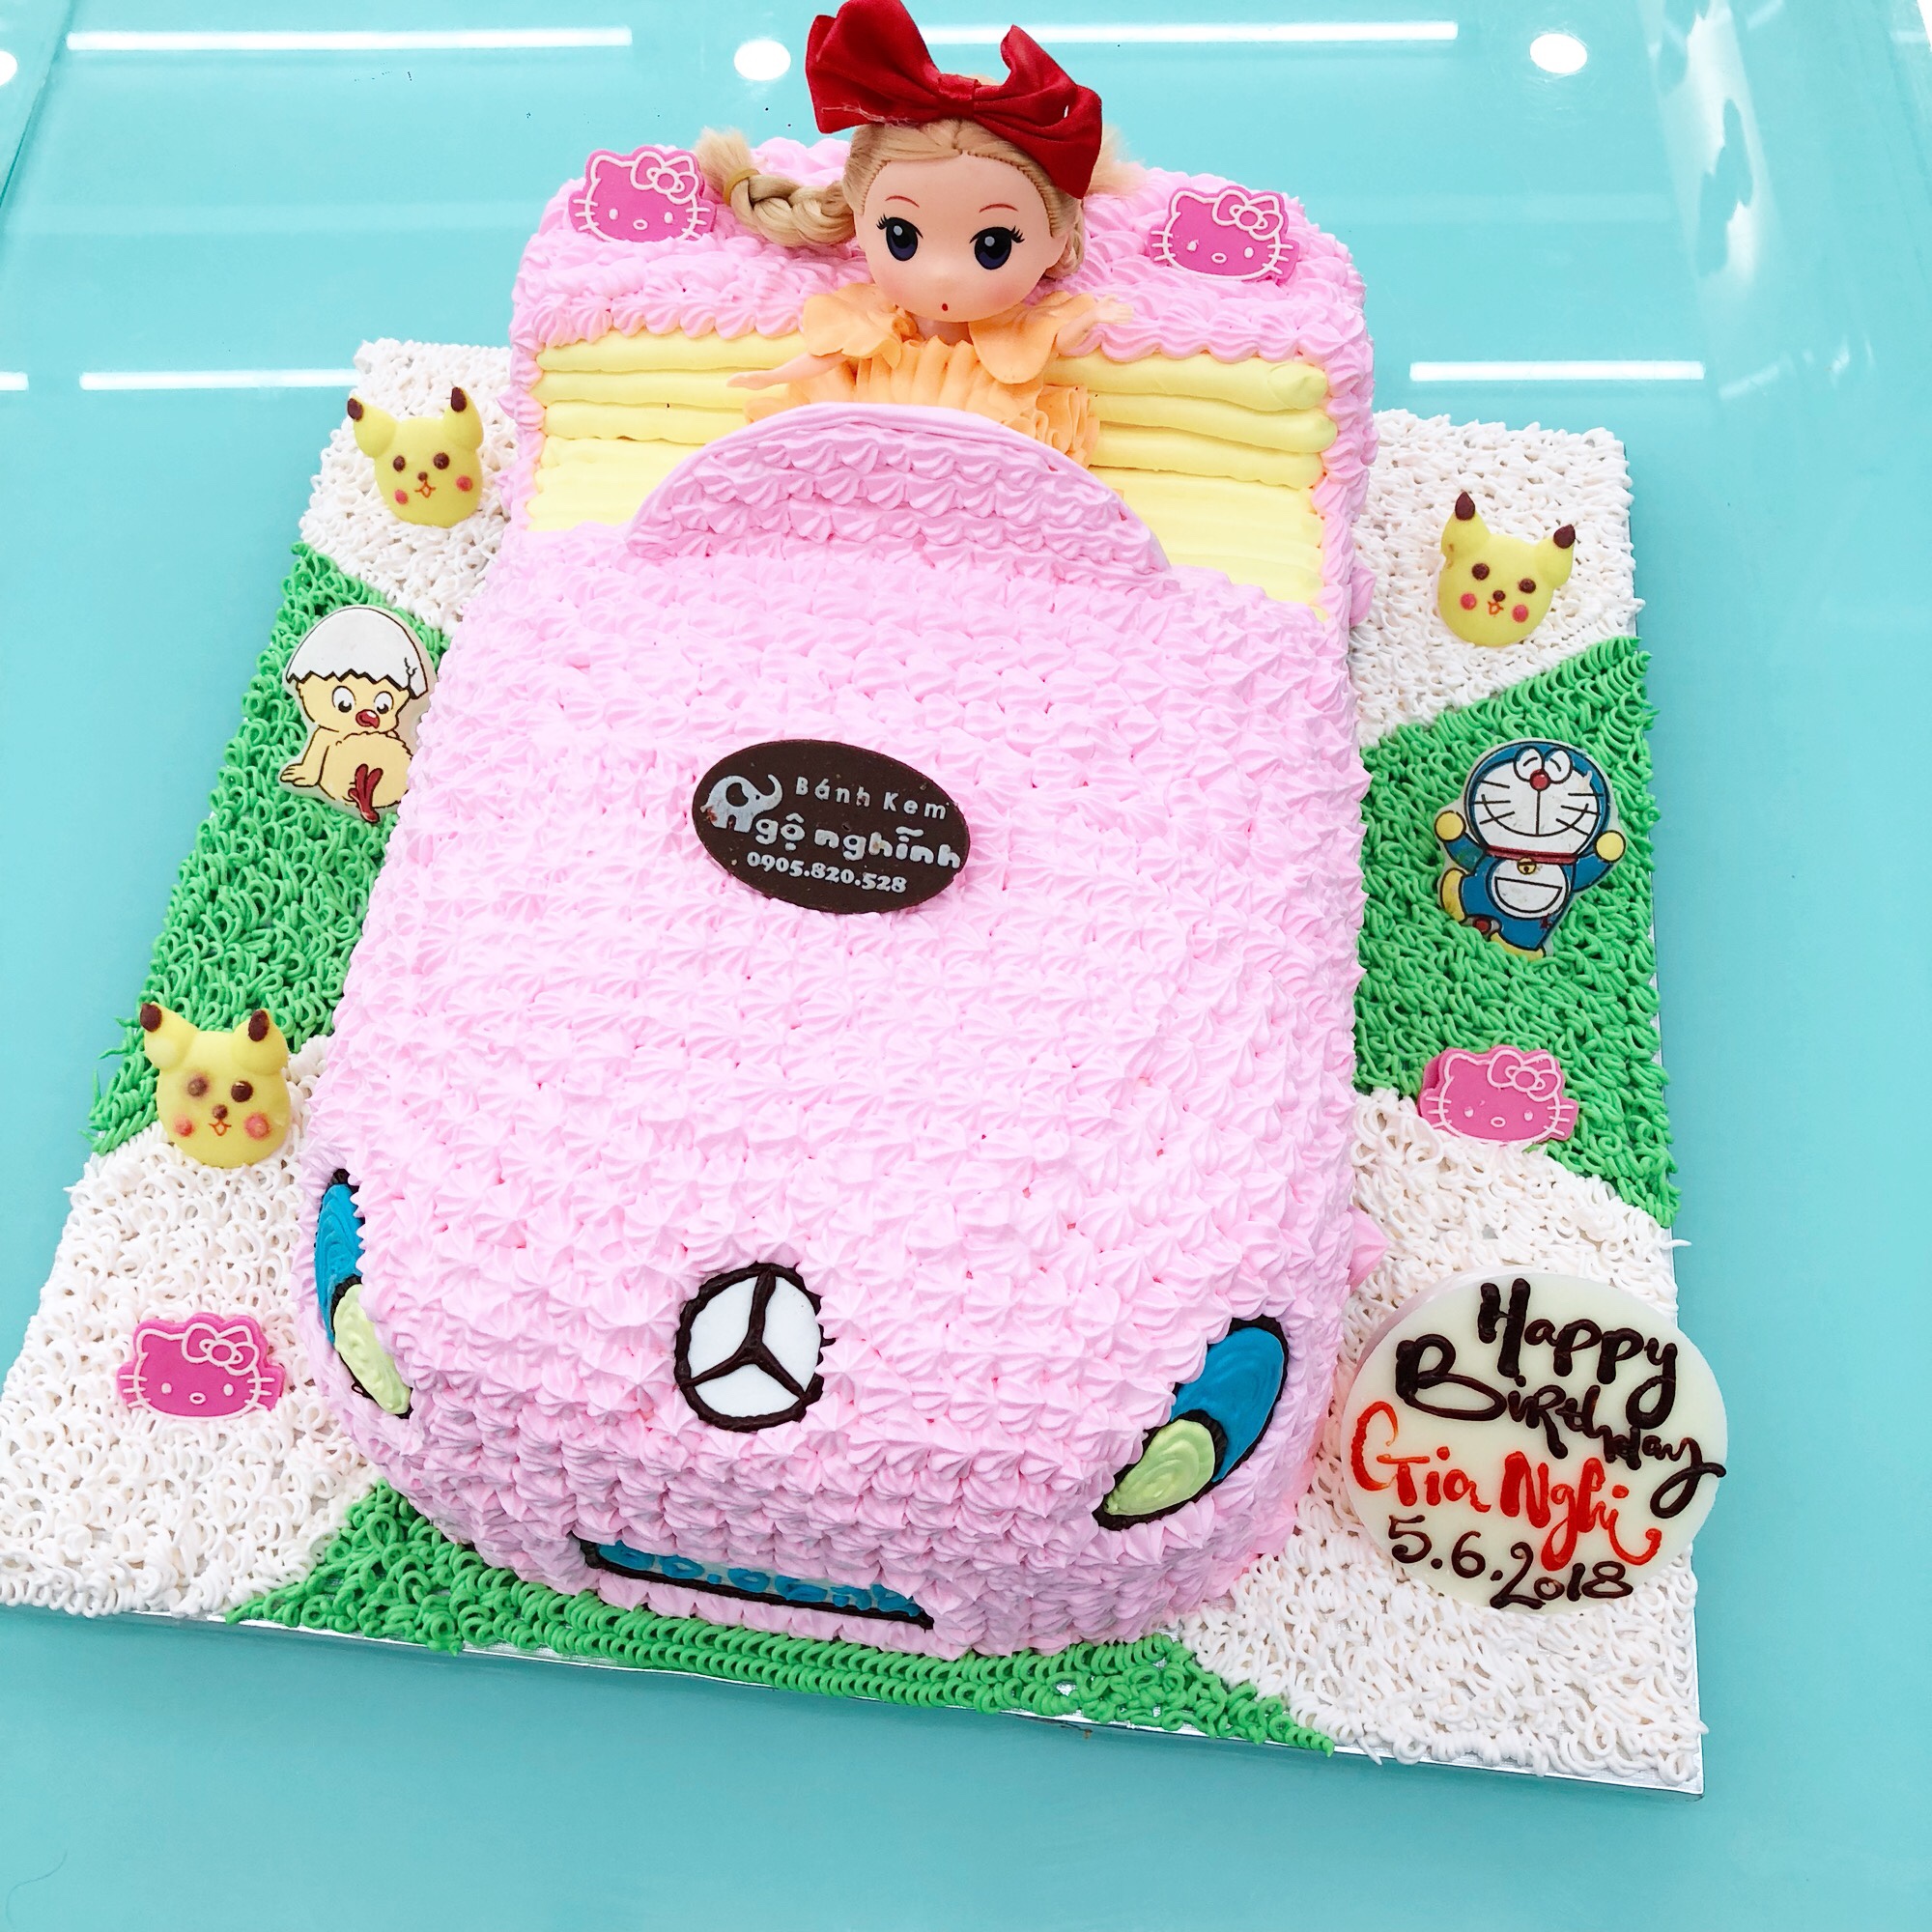 Đừng bỏ lỡ cơ hội thưởng thức chiếc bánh sinh nhật công chúa chibi lái xe màu hồng ngọt ngào và đầy màu sắc. Chiếc bánh kếp bông cùng những hoa làm bằng kem tuỳ ý trang trí, tạo nên một tác phẩm nghệ thuật bắt mắt và đáng yêu. Hãy tặng cho bạn bè và người thân một chiếc bánh sinh nhật công chúa chibi màu hồng để cùng nhau chia sẻ niềm vui.